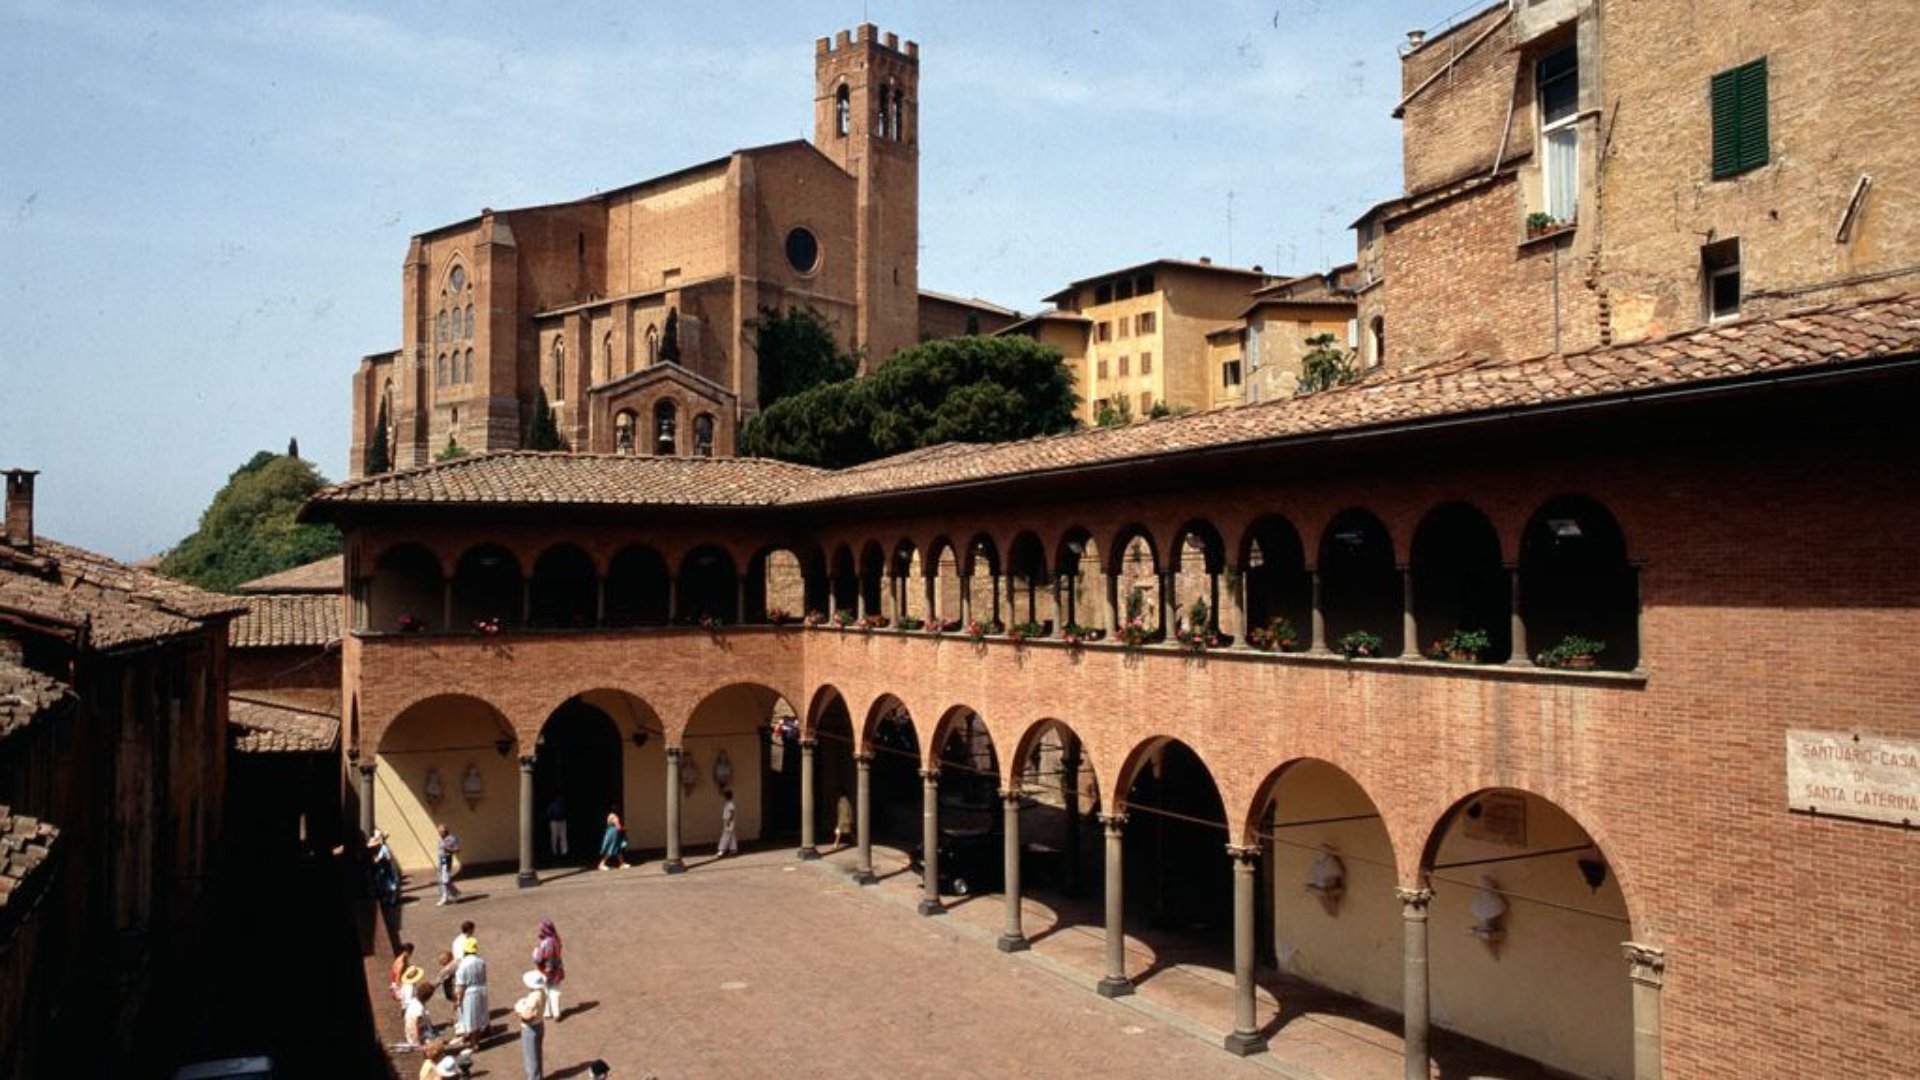 Santuario Casa di Santa Caterina, Portico dei Comuni, Siena